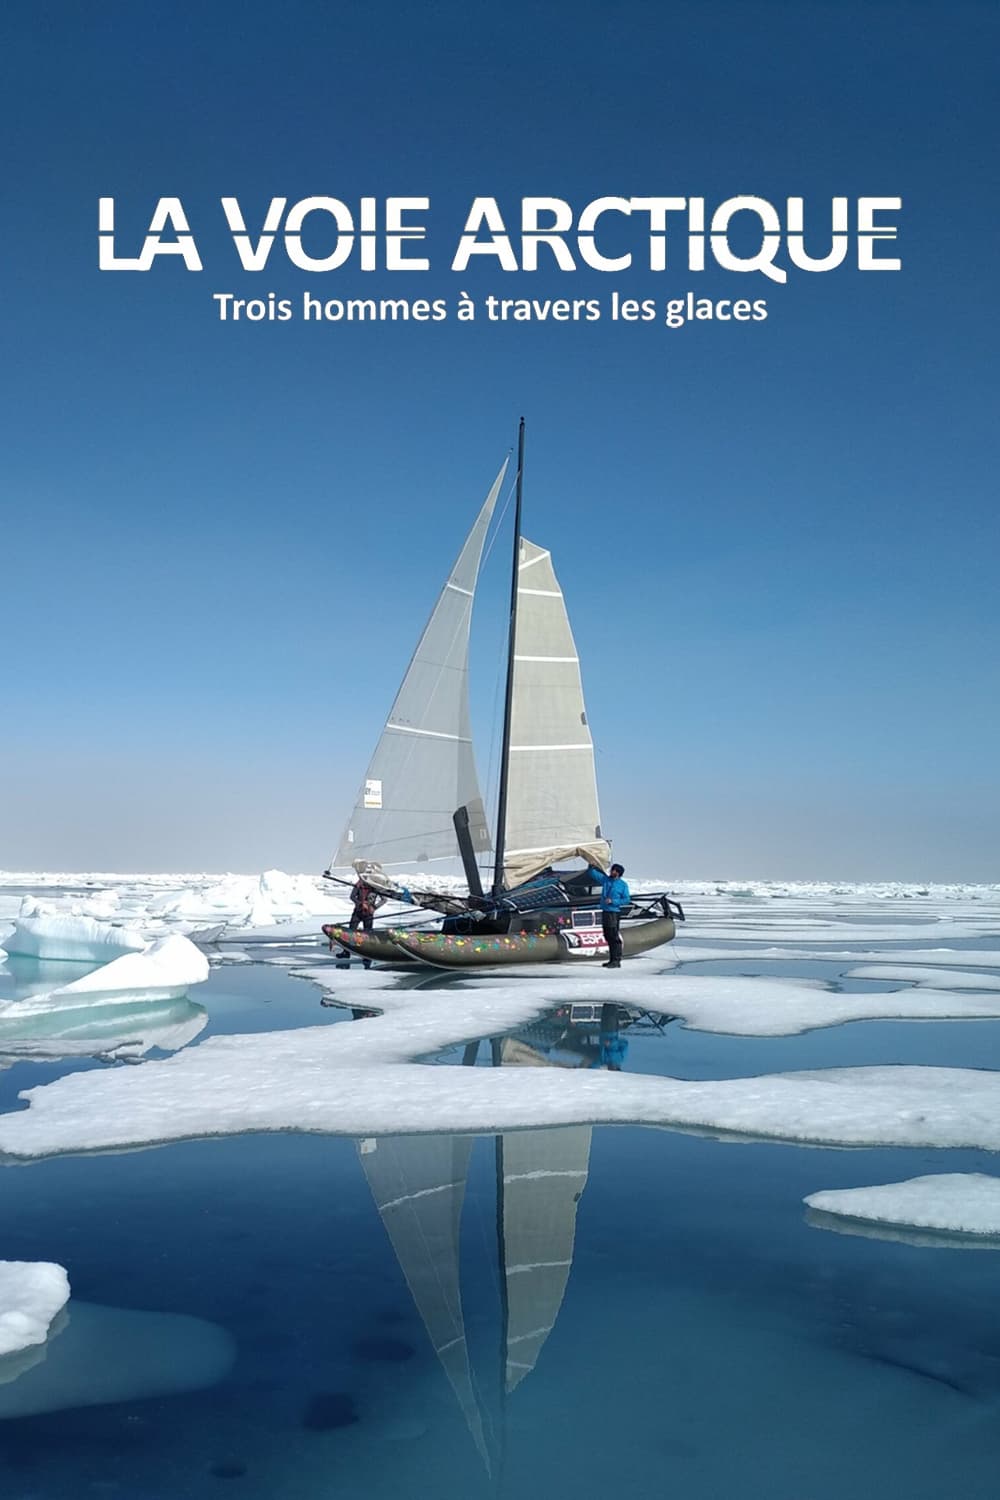 La Voie arctique - Trois hommes à travers les glaces